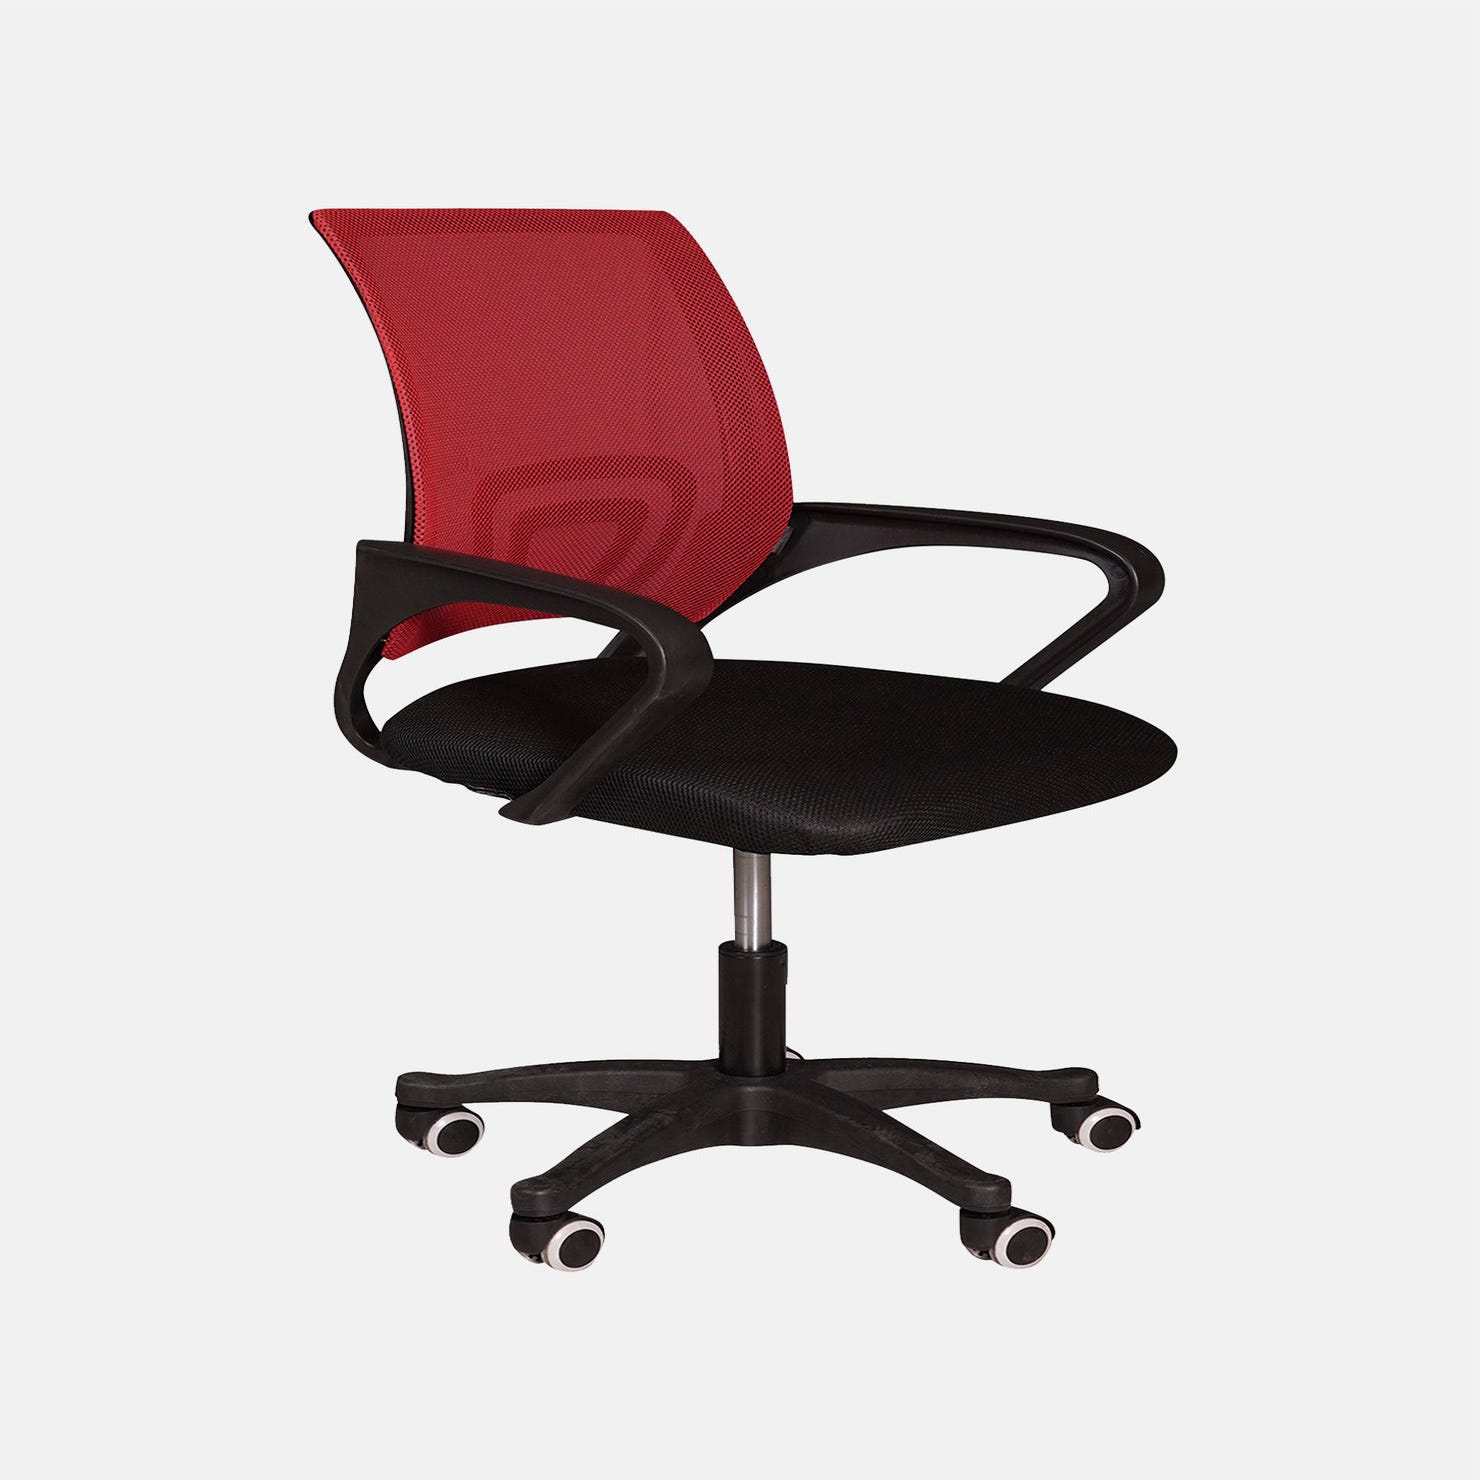 Chaise de bureau a roulette Nastro et chaises de bureau plastique (chaises  noir, rouge, blanche).